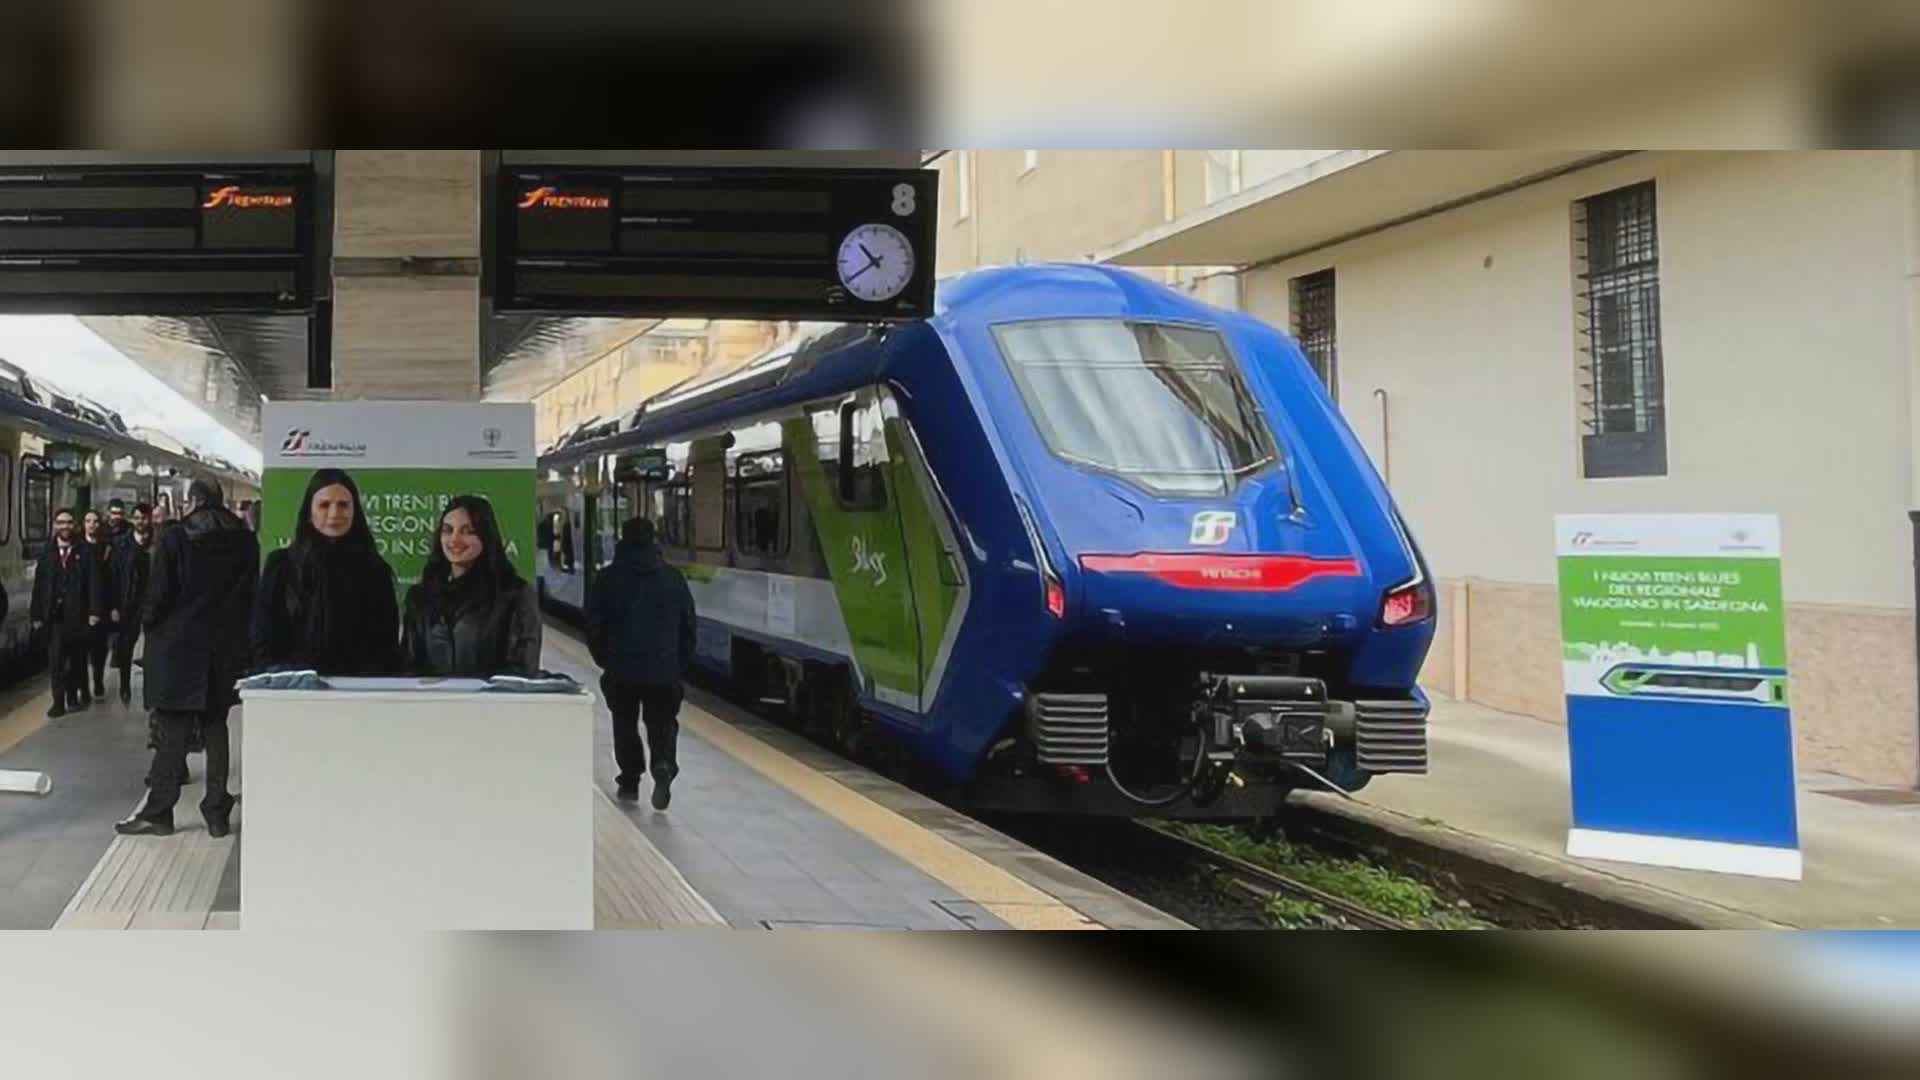 Sardegna: nuovi treni sulla Monserrato-Isili. Il Governatore Solinas: "Continuiamo a investire sul sitema ferroviario"